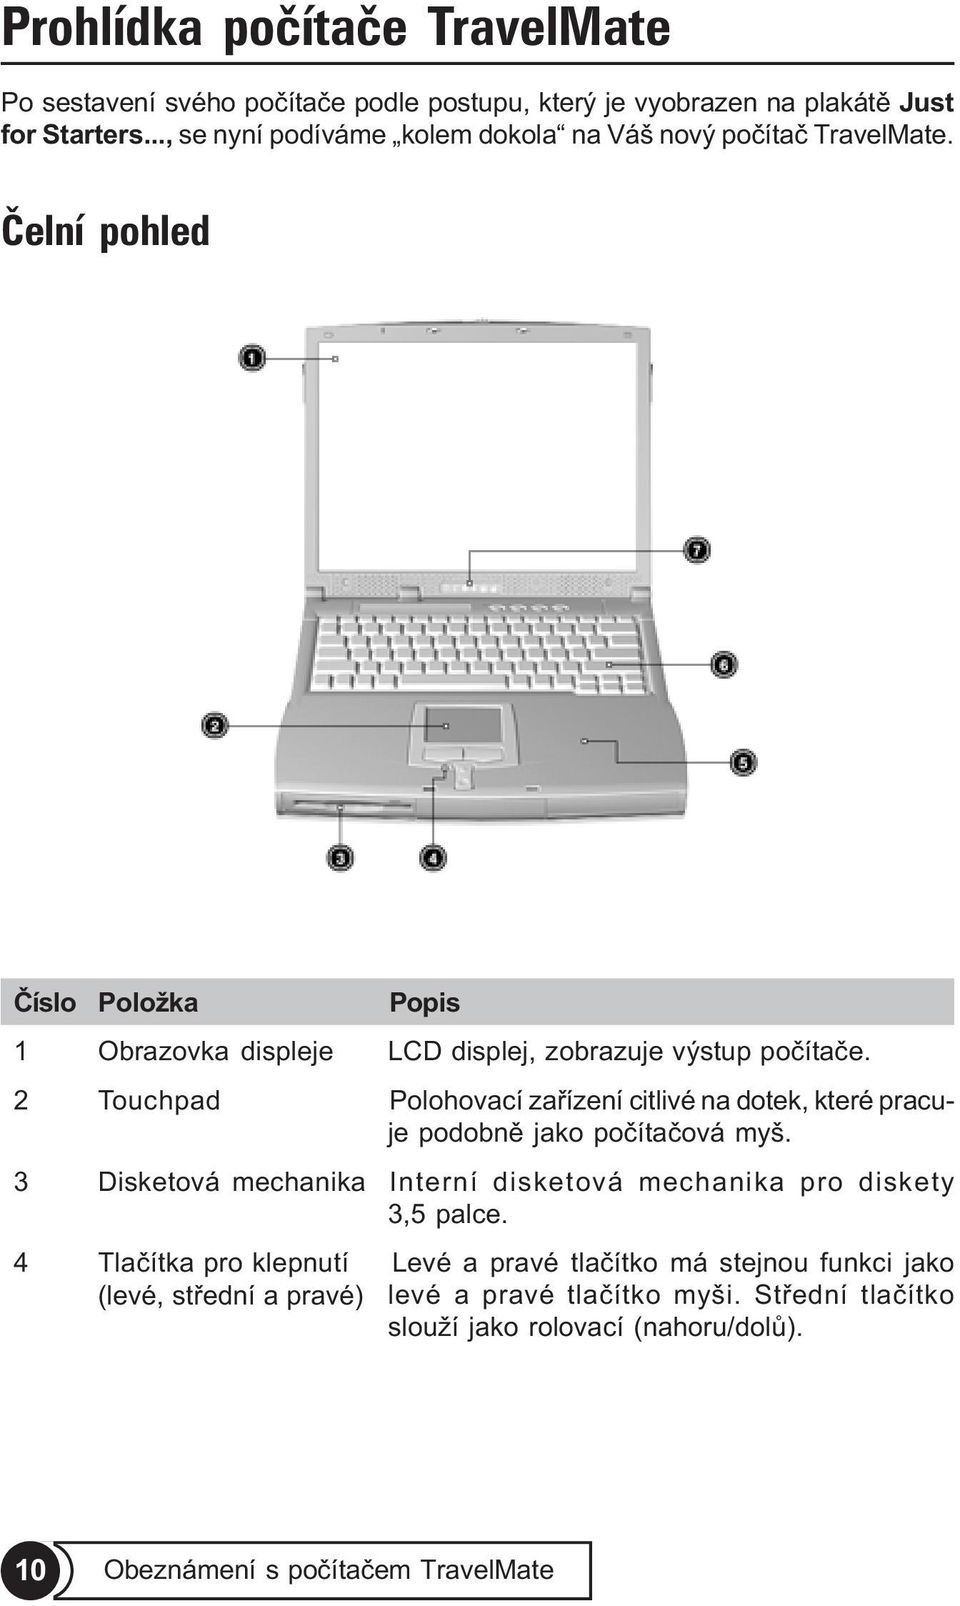 2 Touchpad Polohovací zaøízení citlivé na dotek, které pracuje podobnì jako poèítaèová myš. 3 Disketová mechanika Interní disketová mechanika pro diskety 3,5 palce.